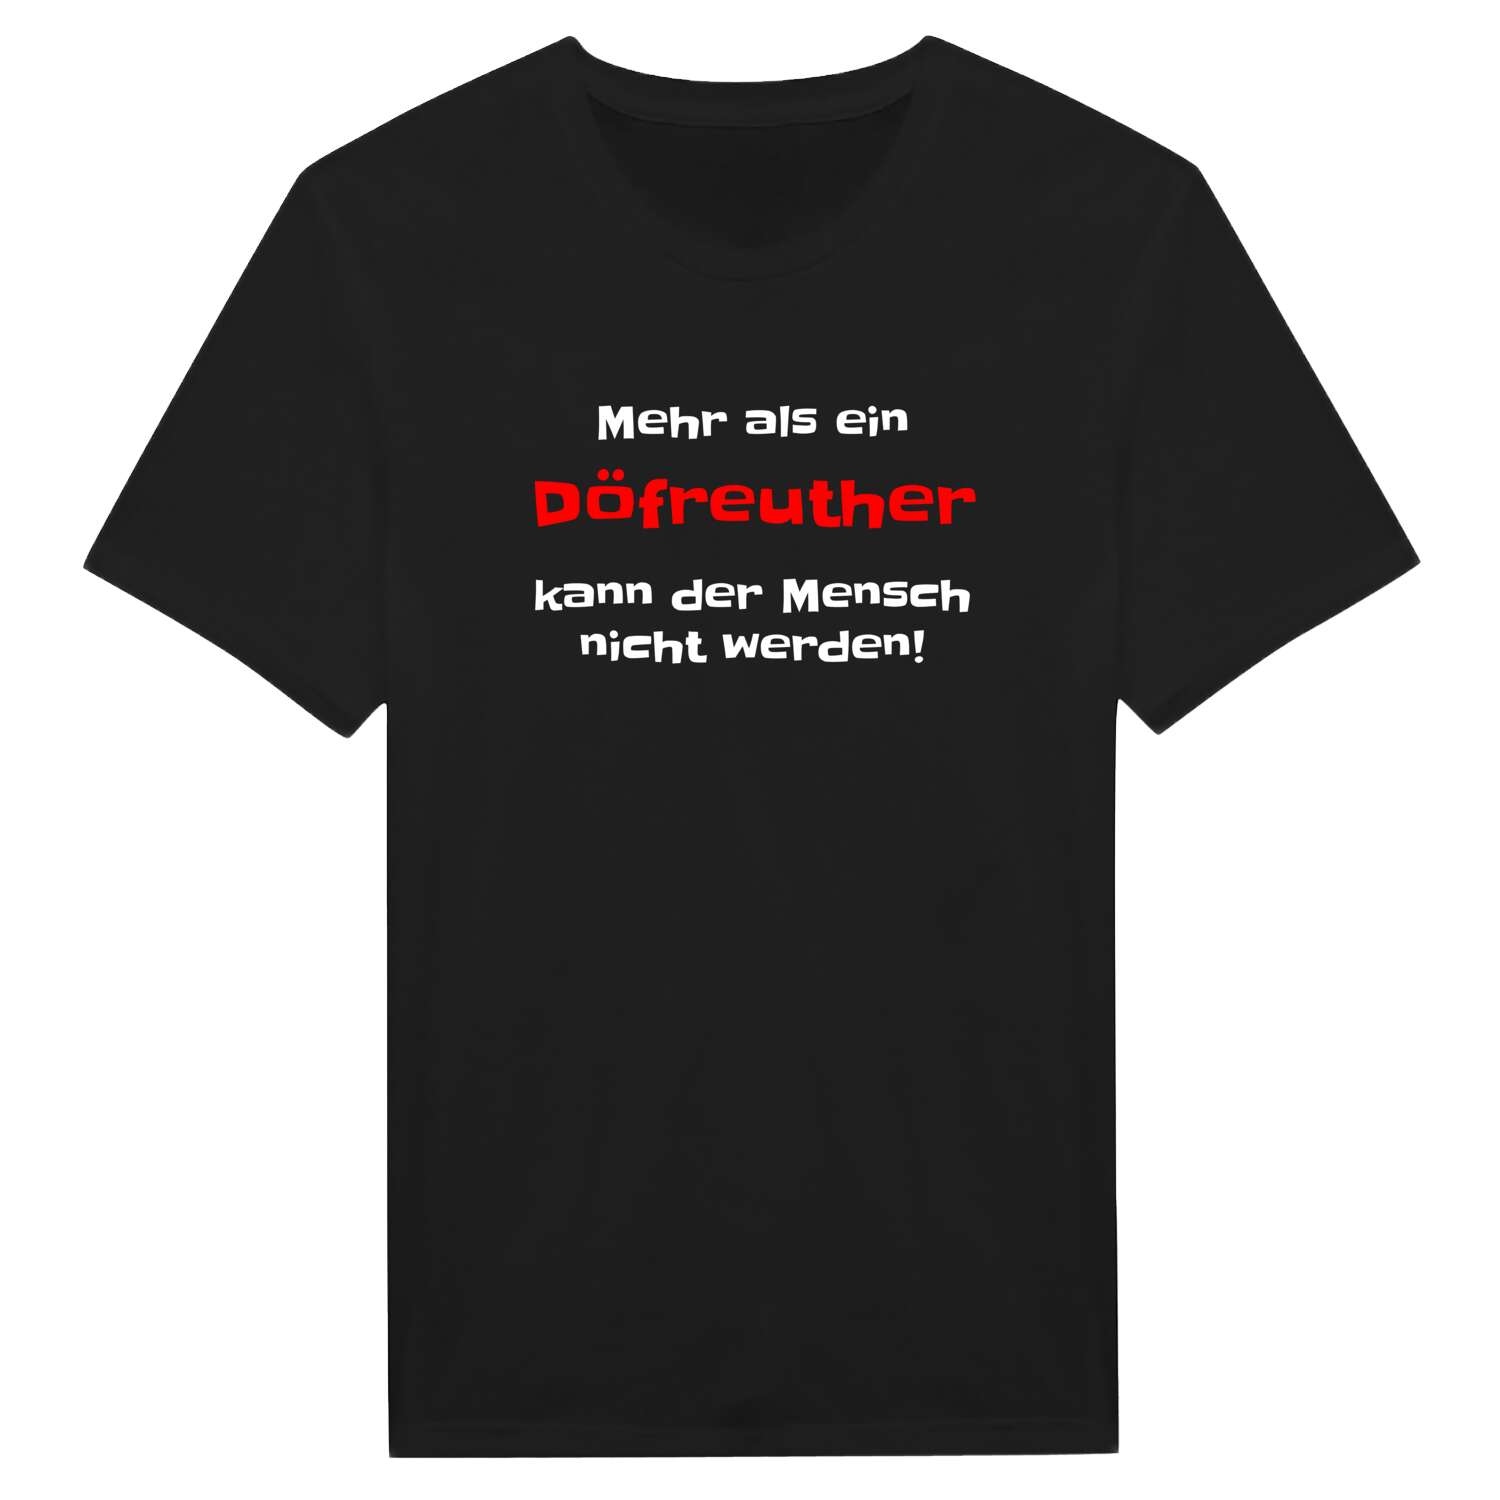 Döfreuth T-Shirt »Mehr als ein«